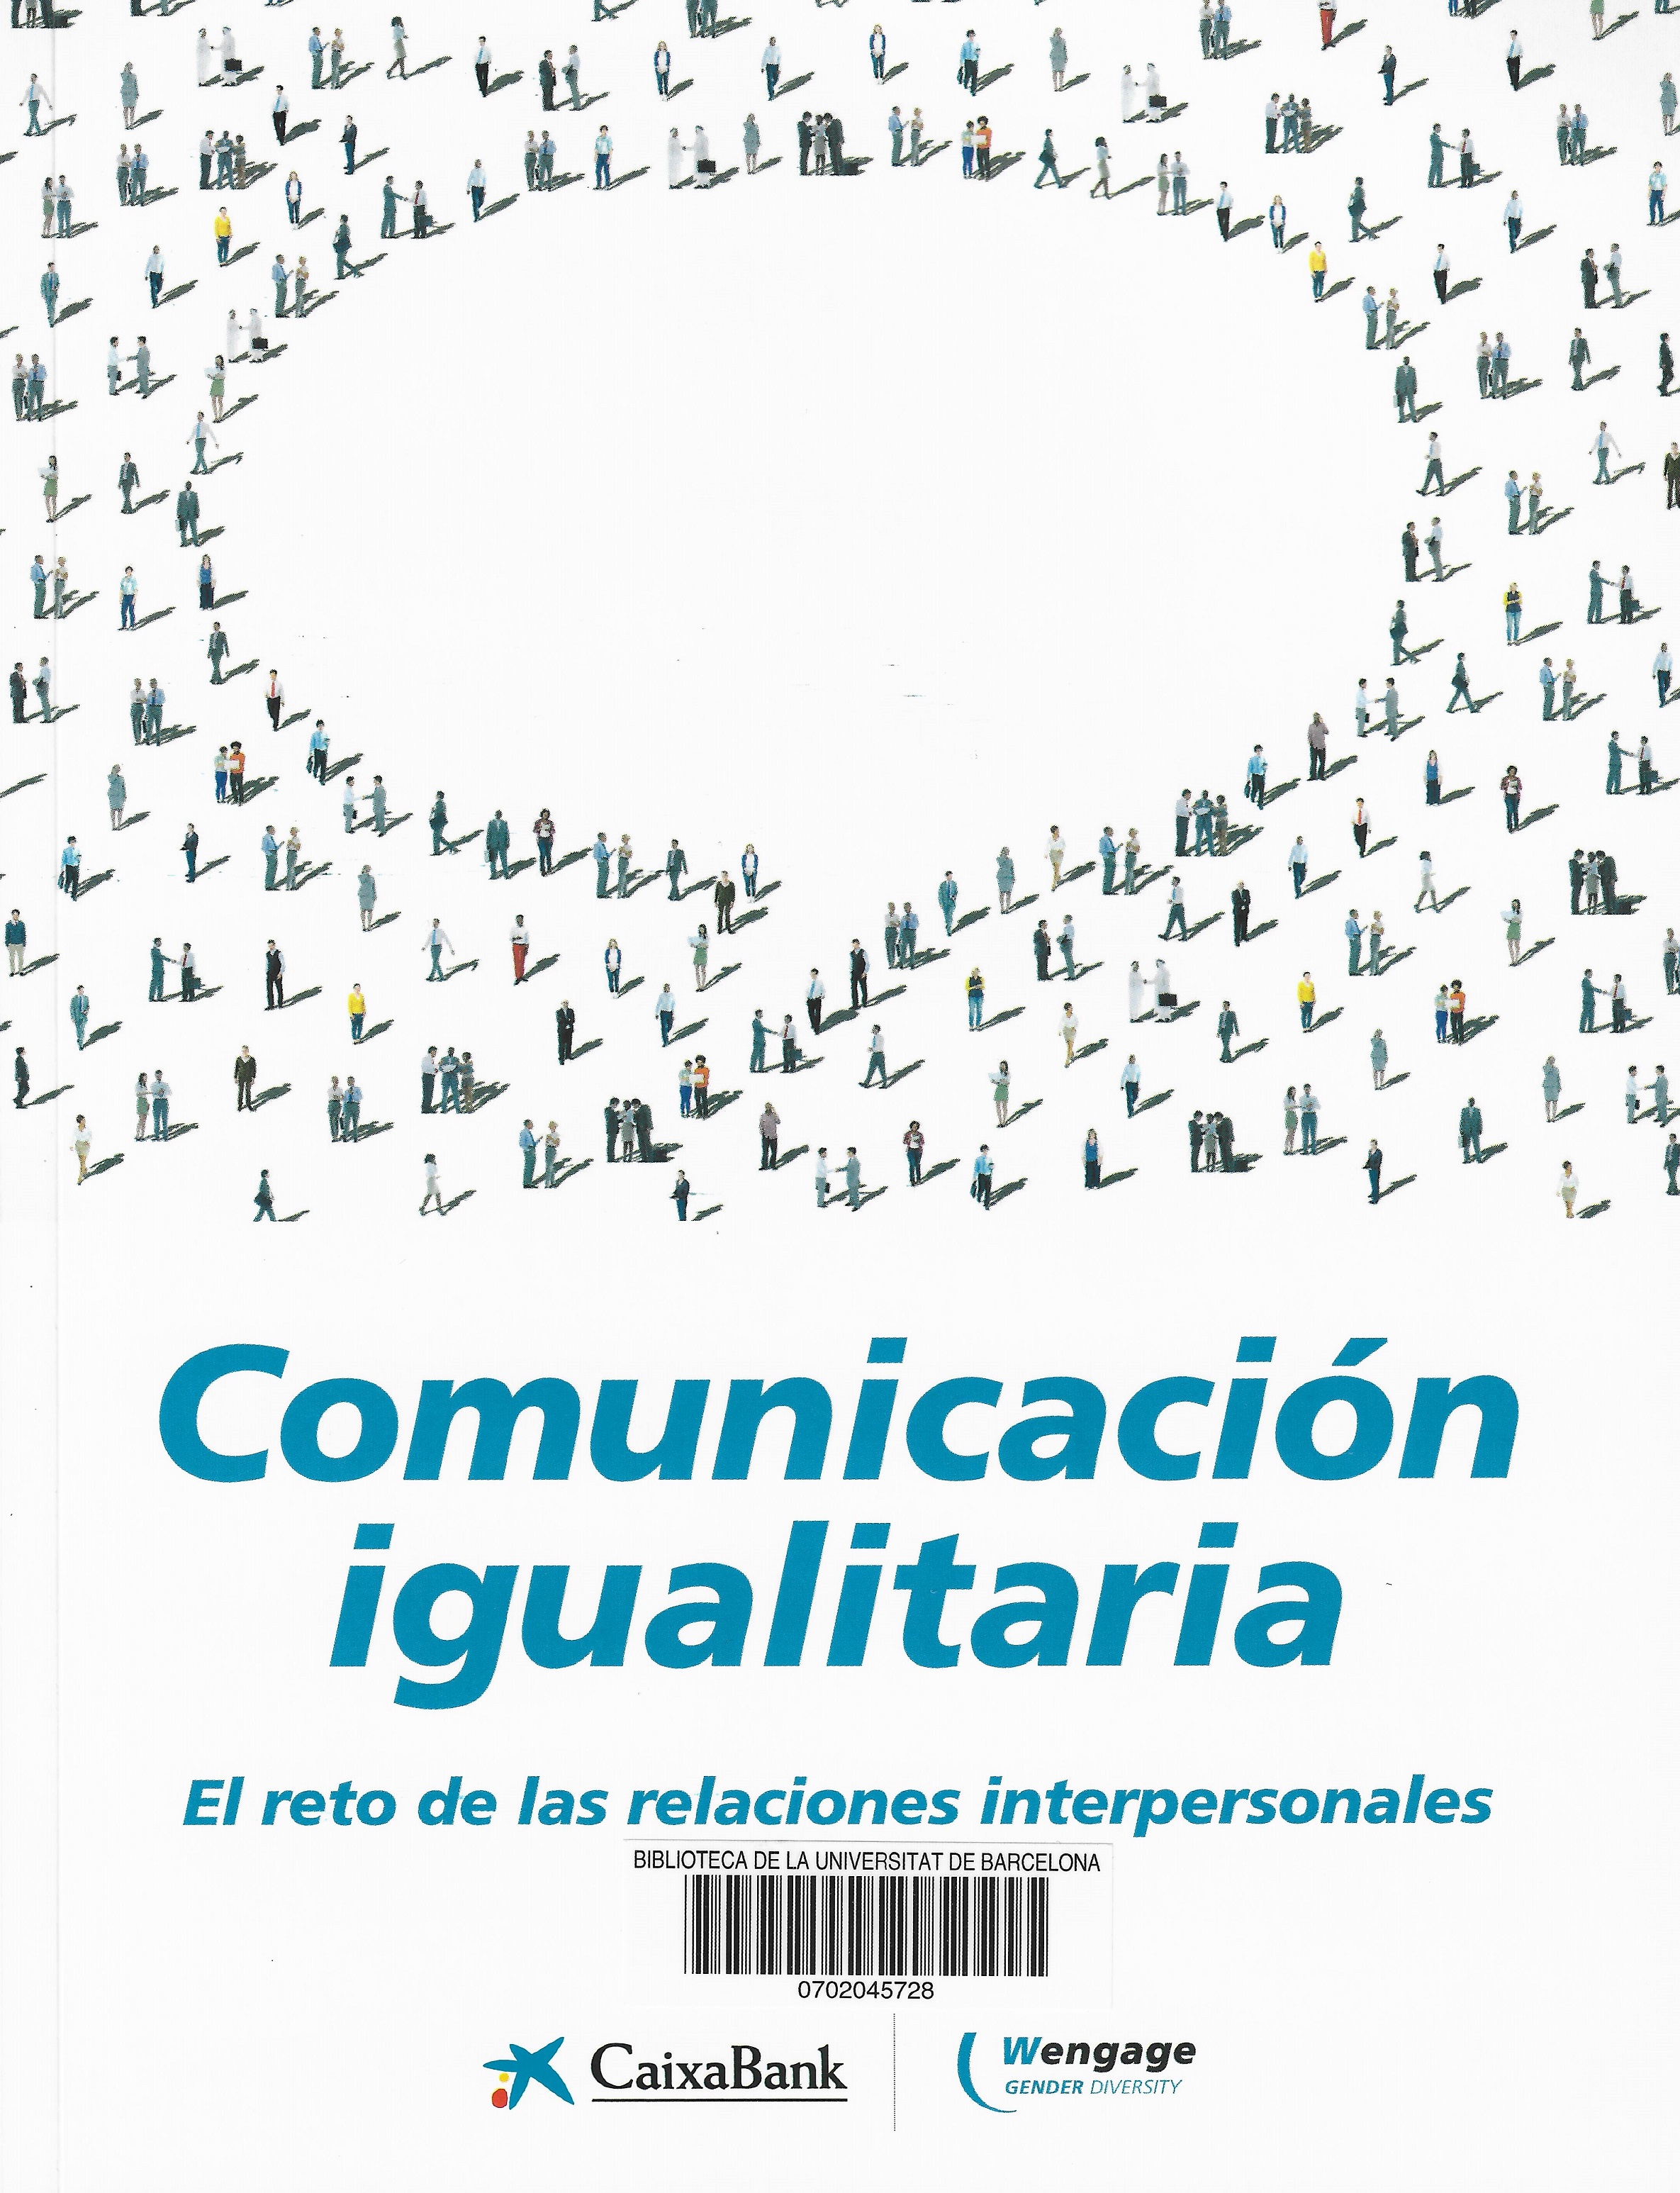 Imagen de portada del libro Comunicación igualitaria